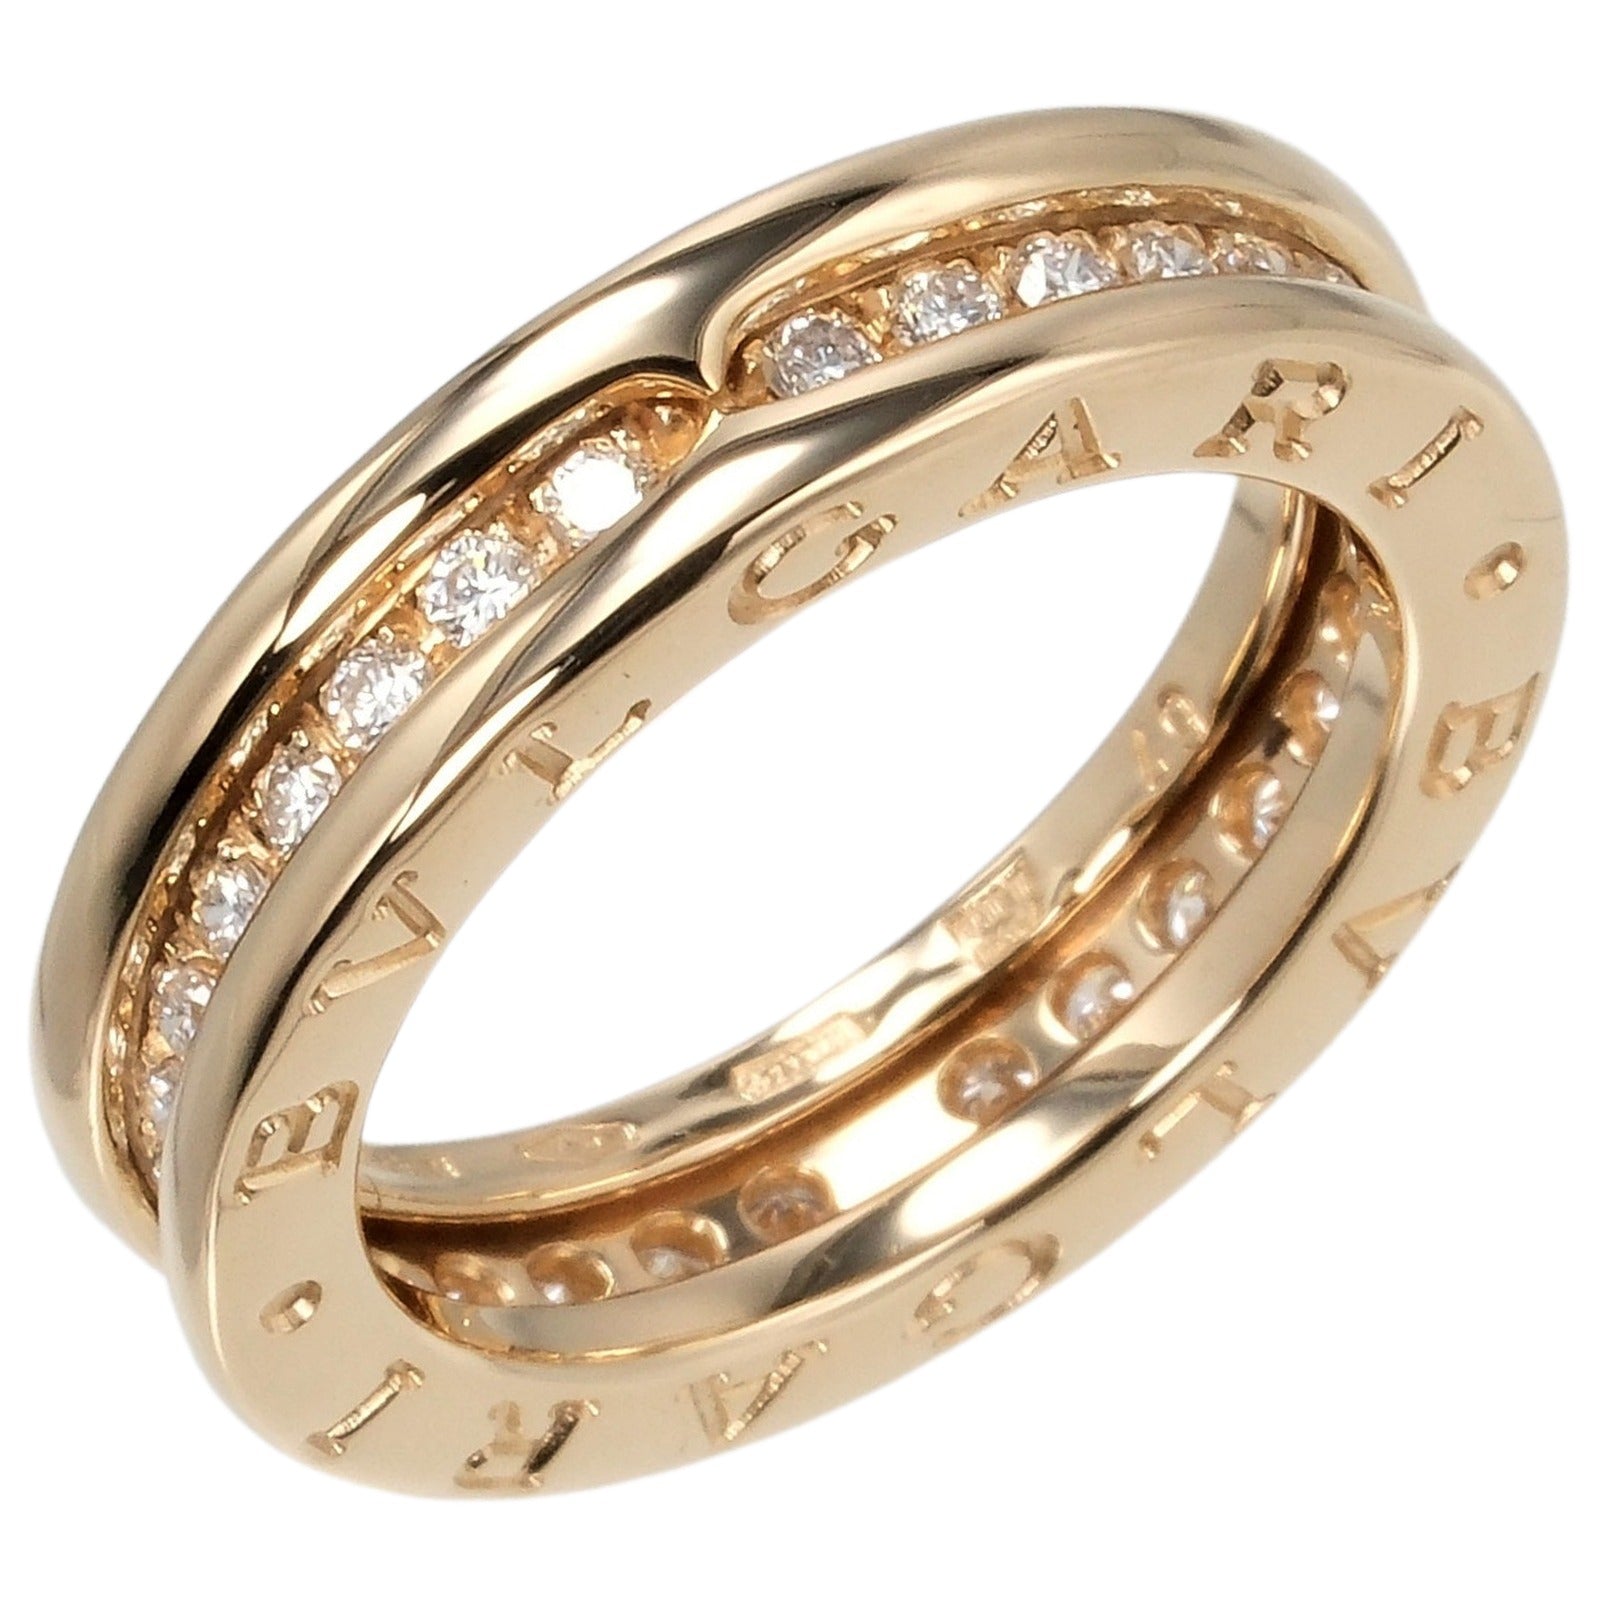 BVLGARI B.ZERO1 XS Single Band Ring, Size 8.5, 6.8g, K18 Yellow Gold with Full Diamonds B.ZERO1